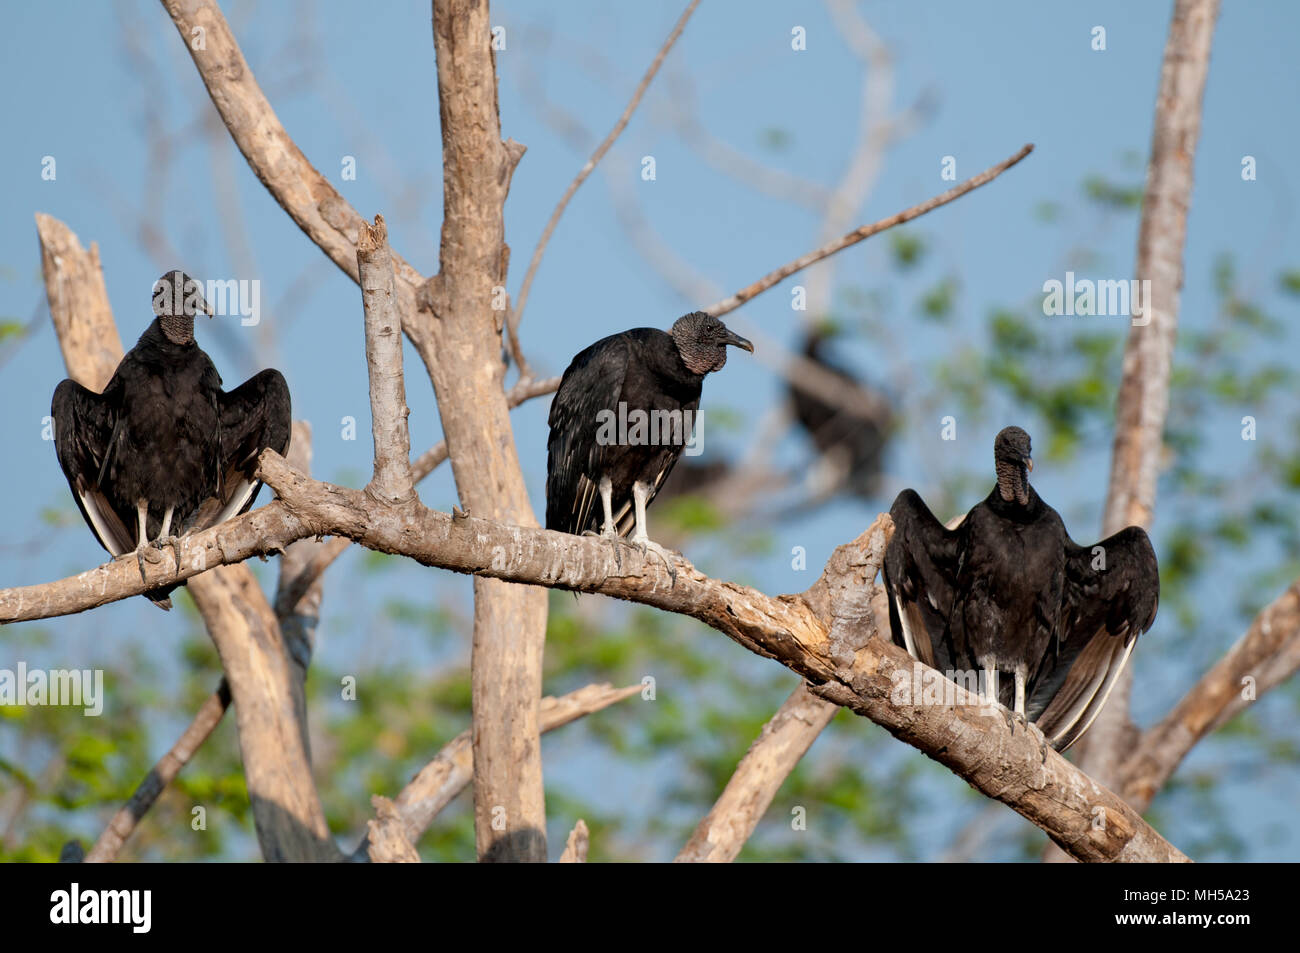 Les vautours noirs en position de propagation (horaltic poser) Banque D'Images